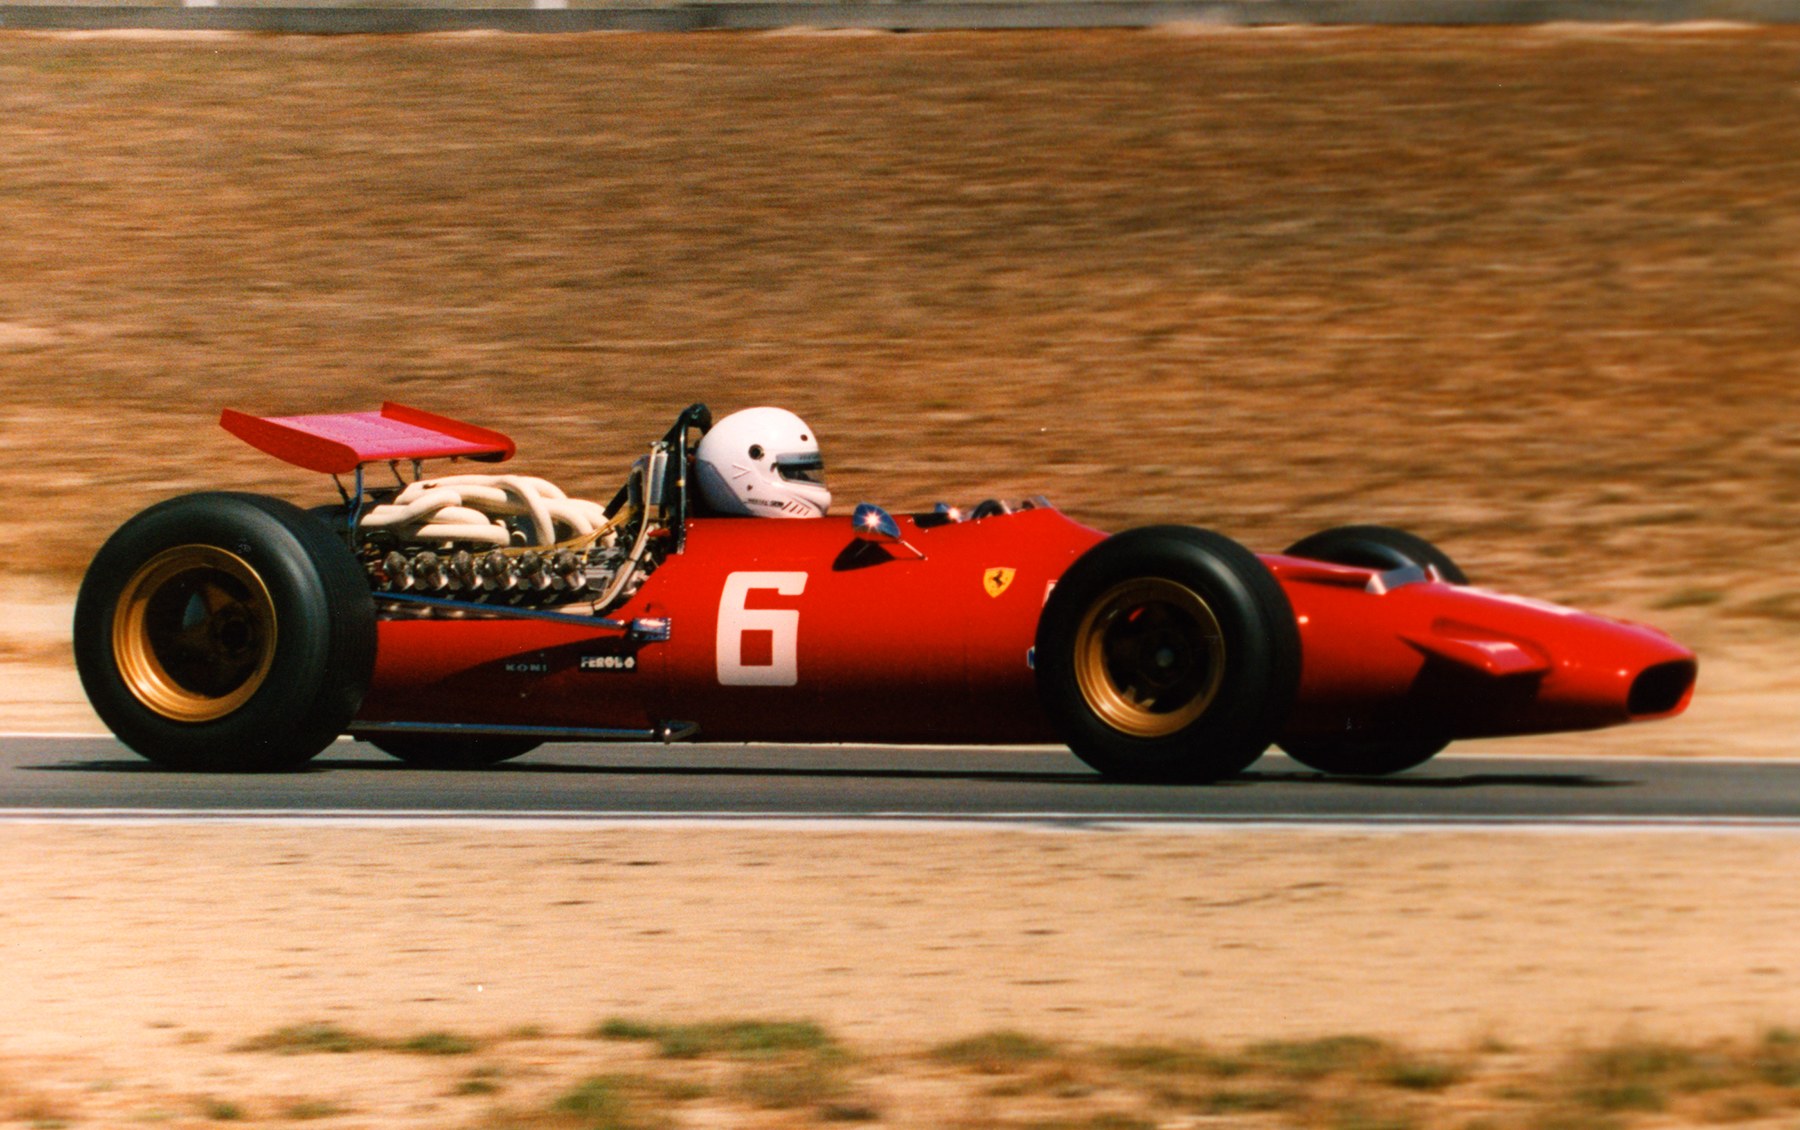 1969 Ferrari 312 Formula One Grand Prix Car